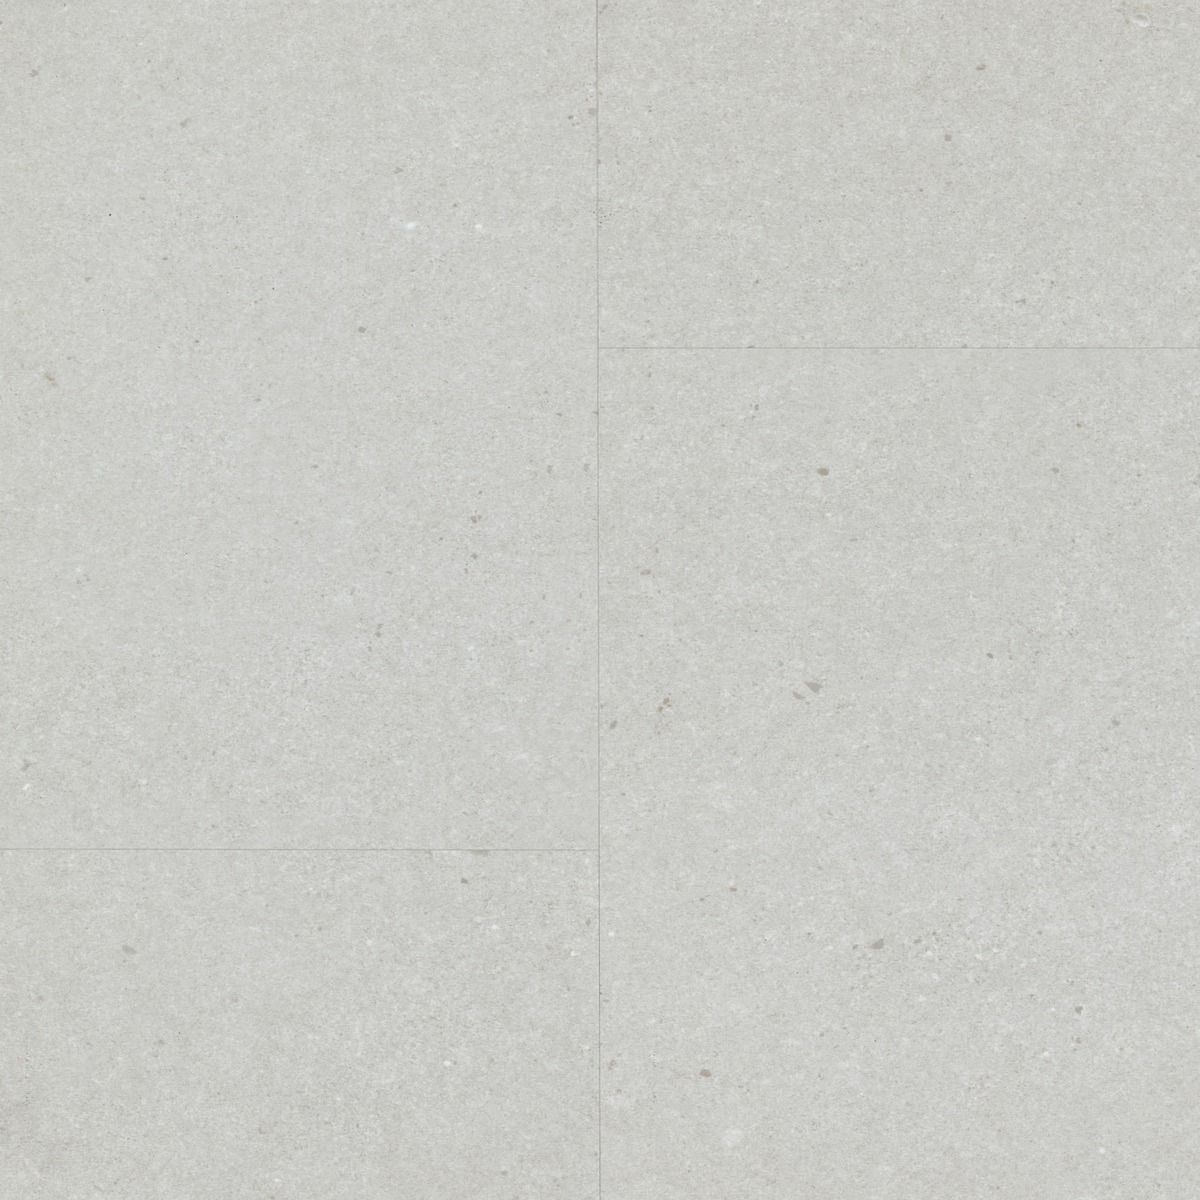 Vinylová podlaha Berry Alloc LIVE CL30 Vibrant stone powder 3,8 mm 60001902 (bal.1,870 m2) - Siko - koupelny - kuchyně